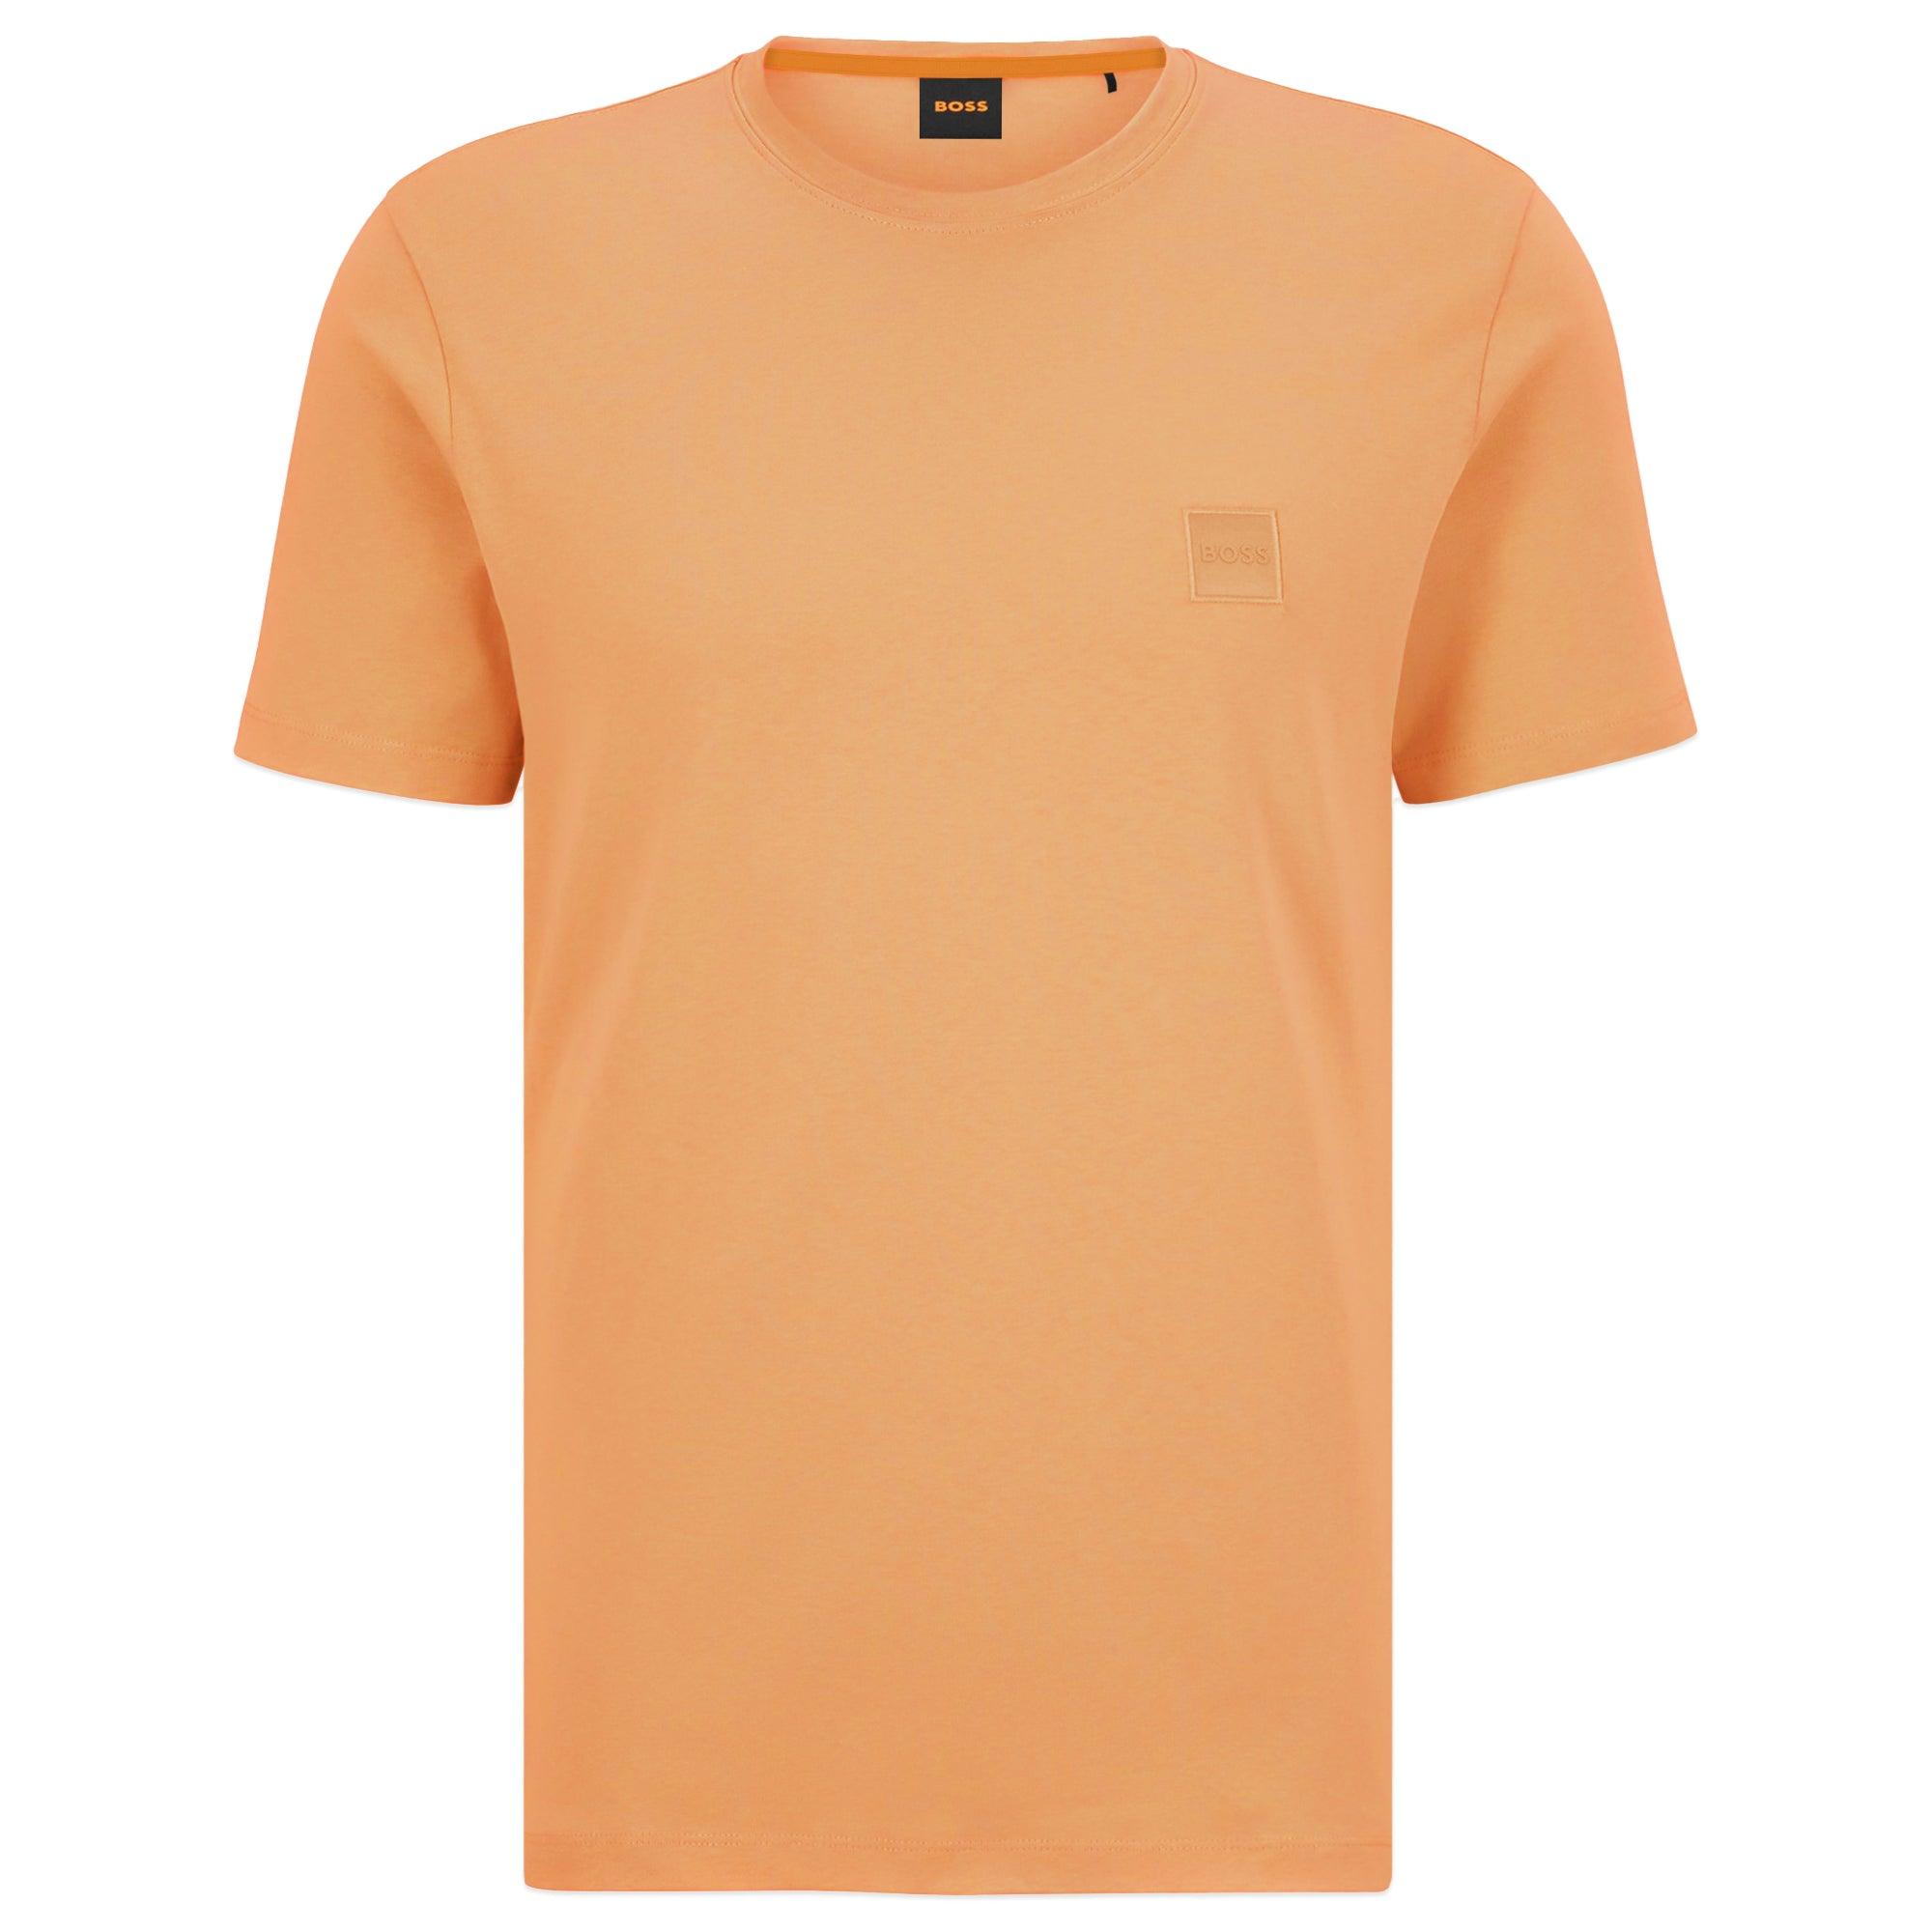 by | in T-shirt Orange Men BOSS BOSS Lyst for Tales HUGO